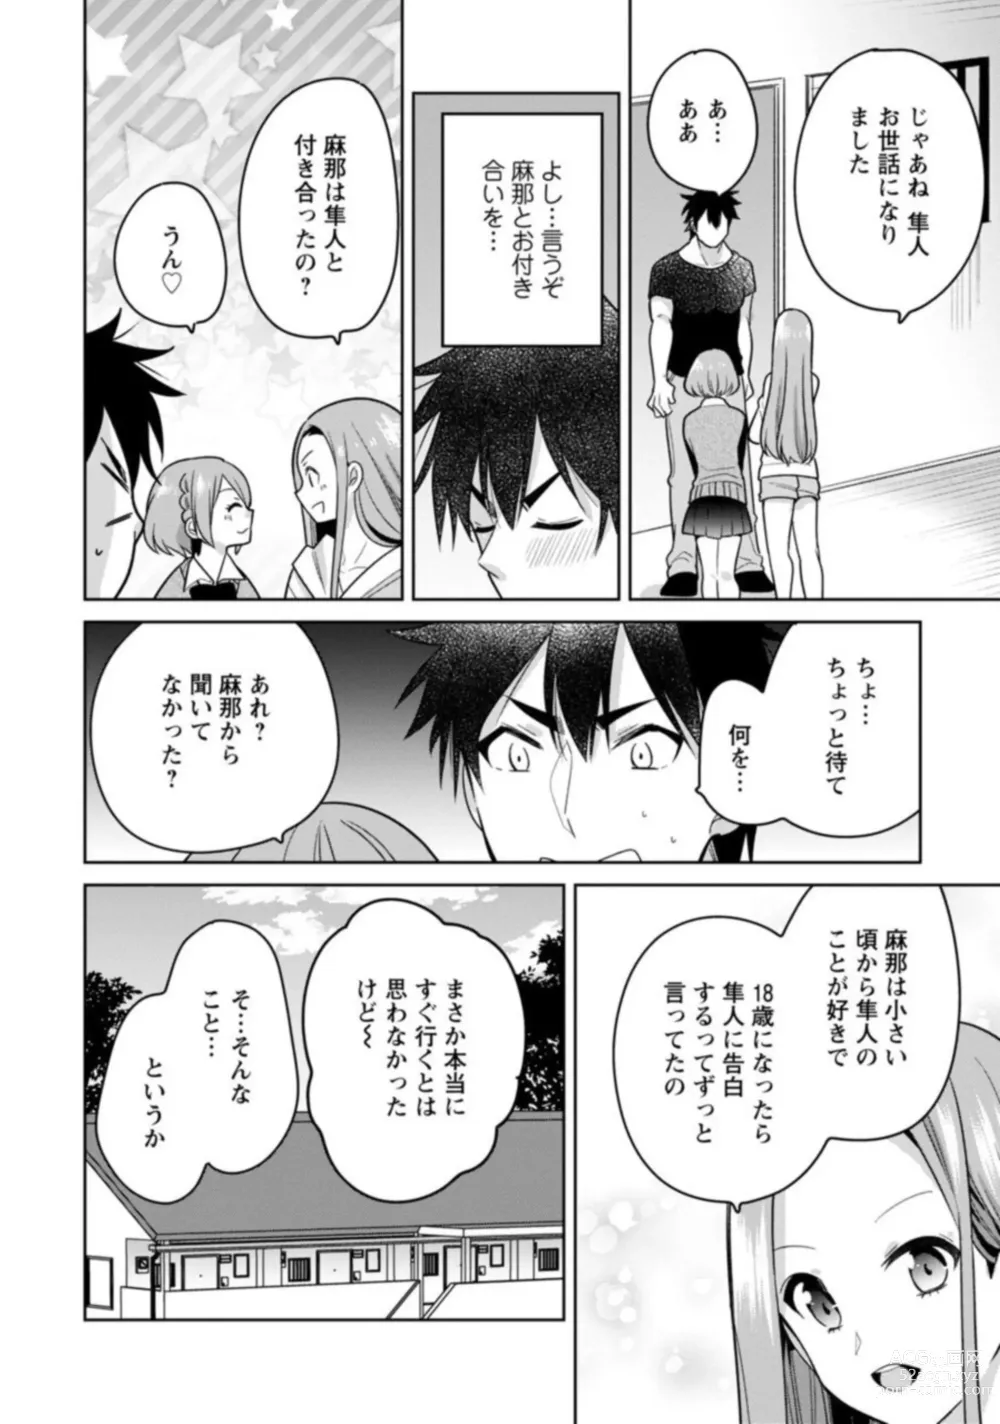 Page 52 of manga Kimochīi Tokoro … Oshieteagerune